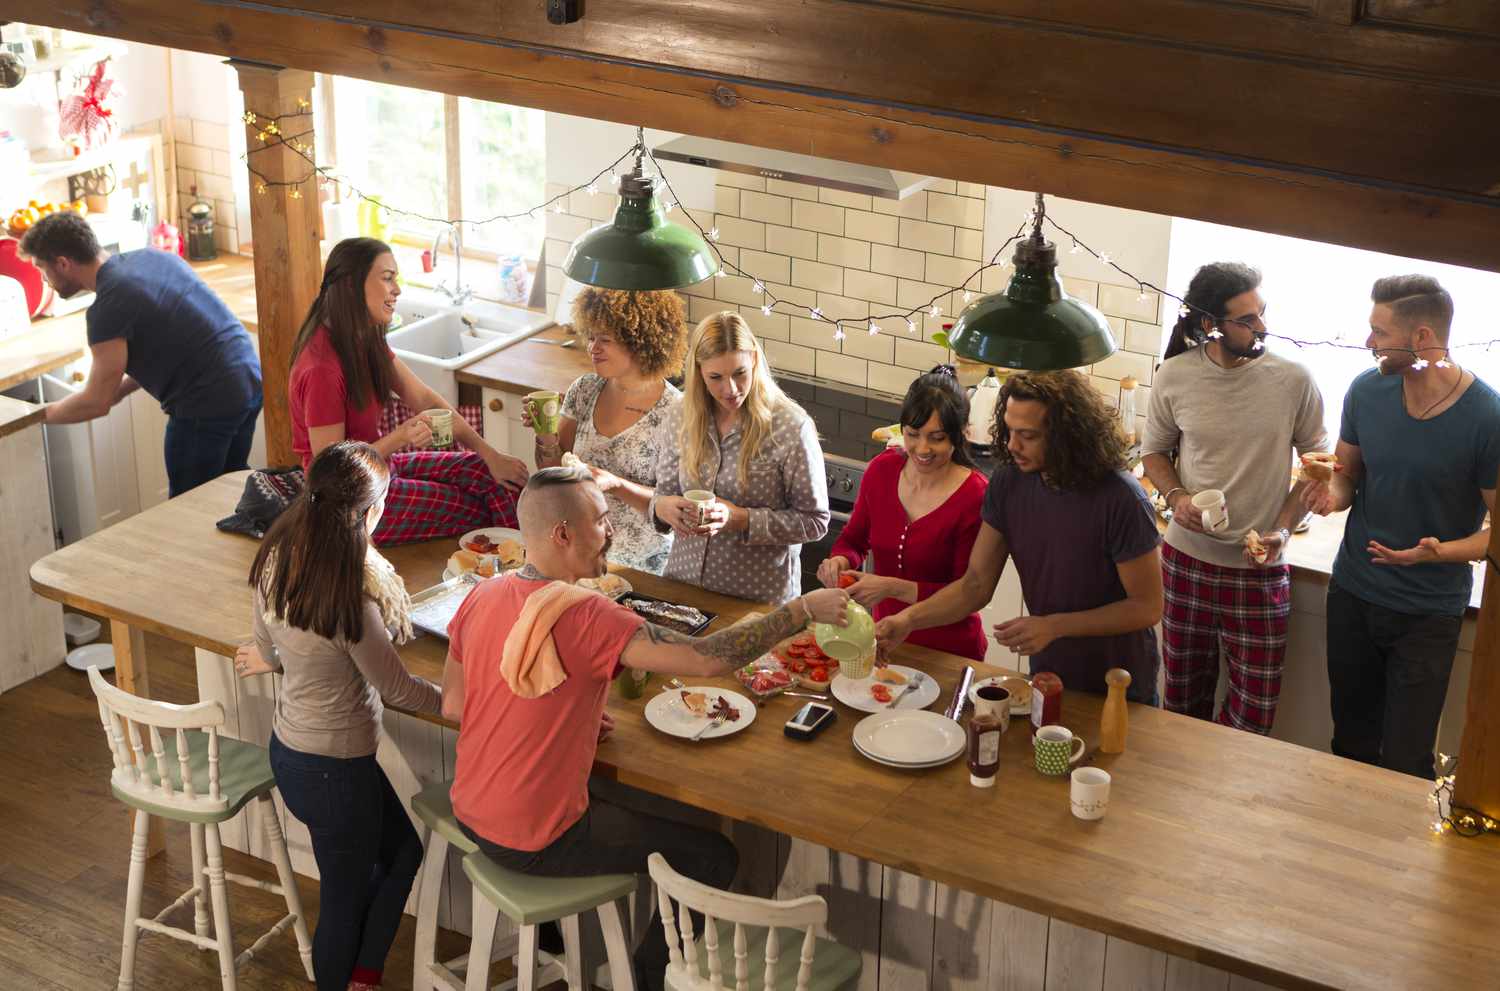 Eine Gruppe von Freunden bereitet in der Küche das Frühstück vor, sie essen Schinkensandwiches und unterhalten sich fröhlich. Es sieht aus, als wären sie auf einem Wochenendausflug.